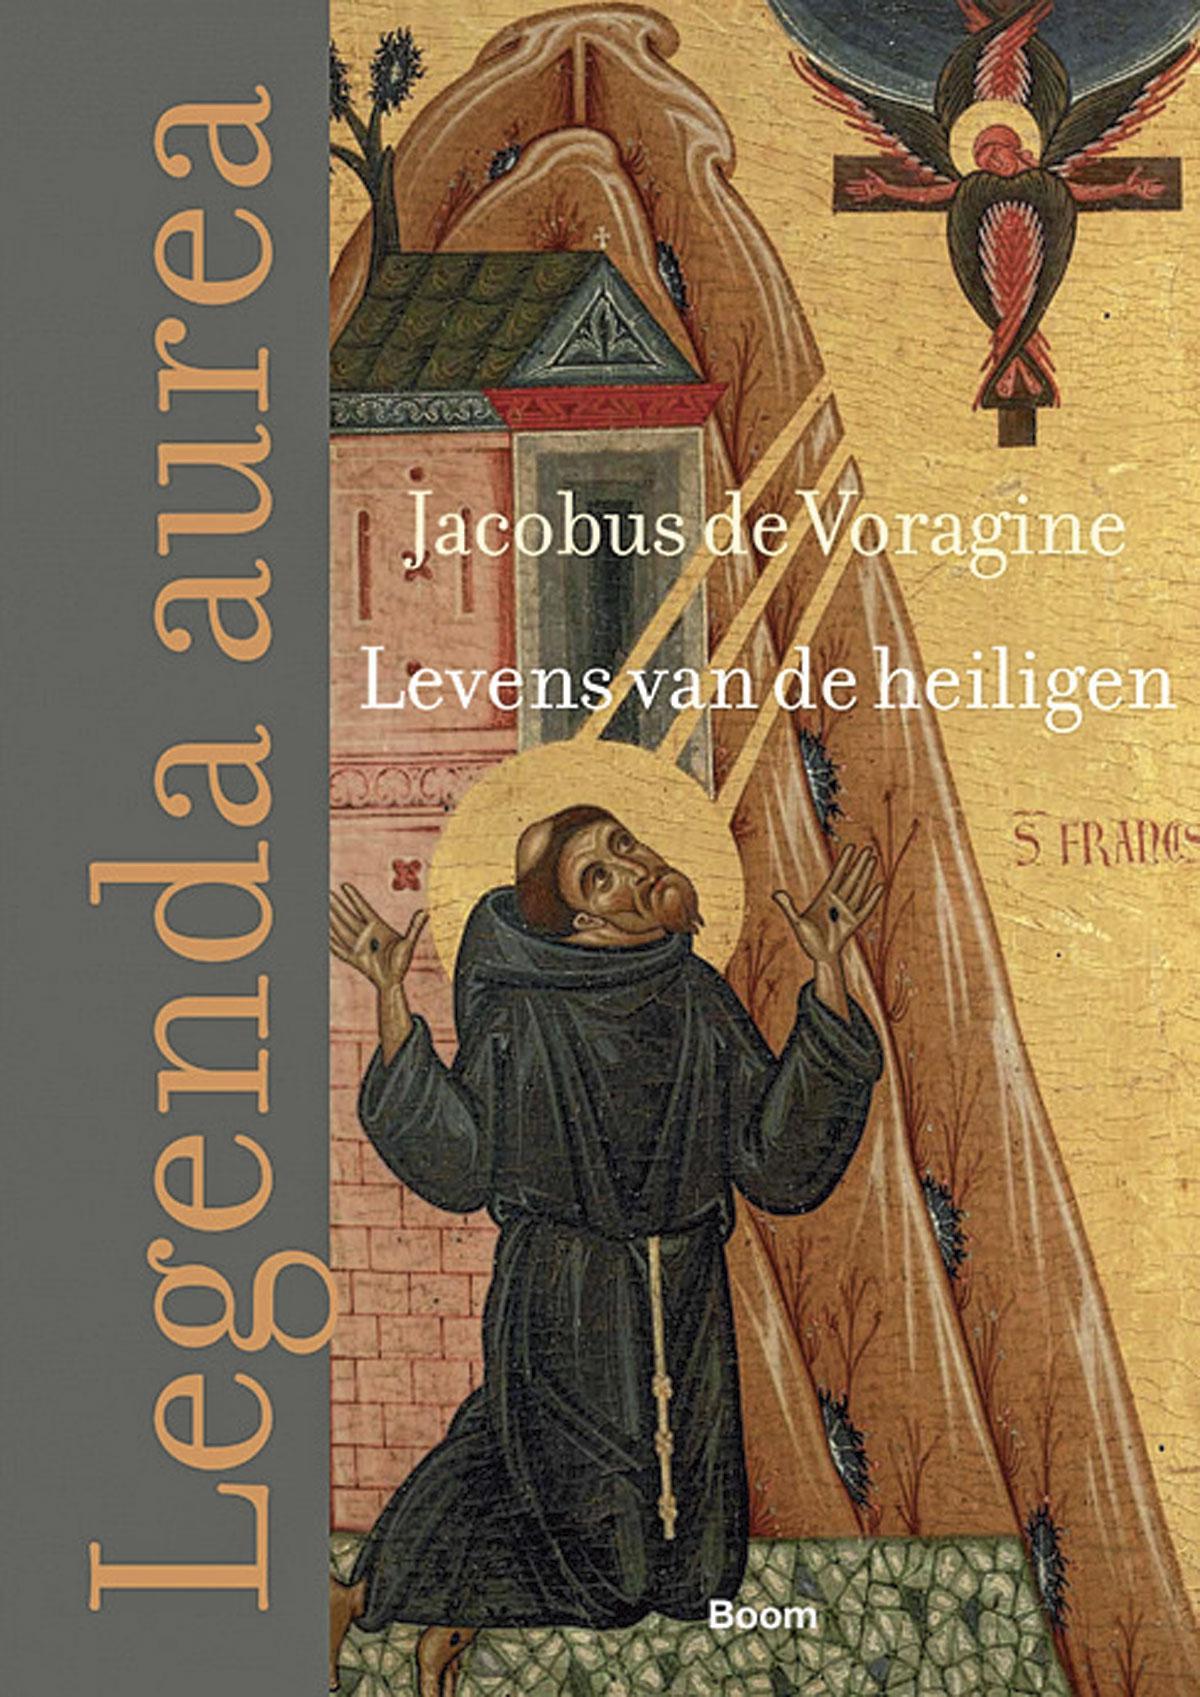 Jacobus de Voragine, Levens van de heiligen, Boom, 1031 blz., 59,90 euro.